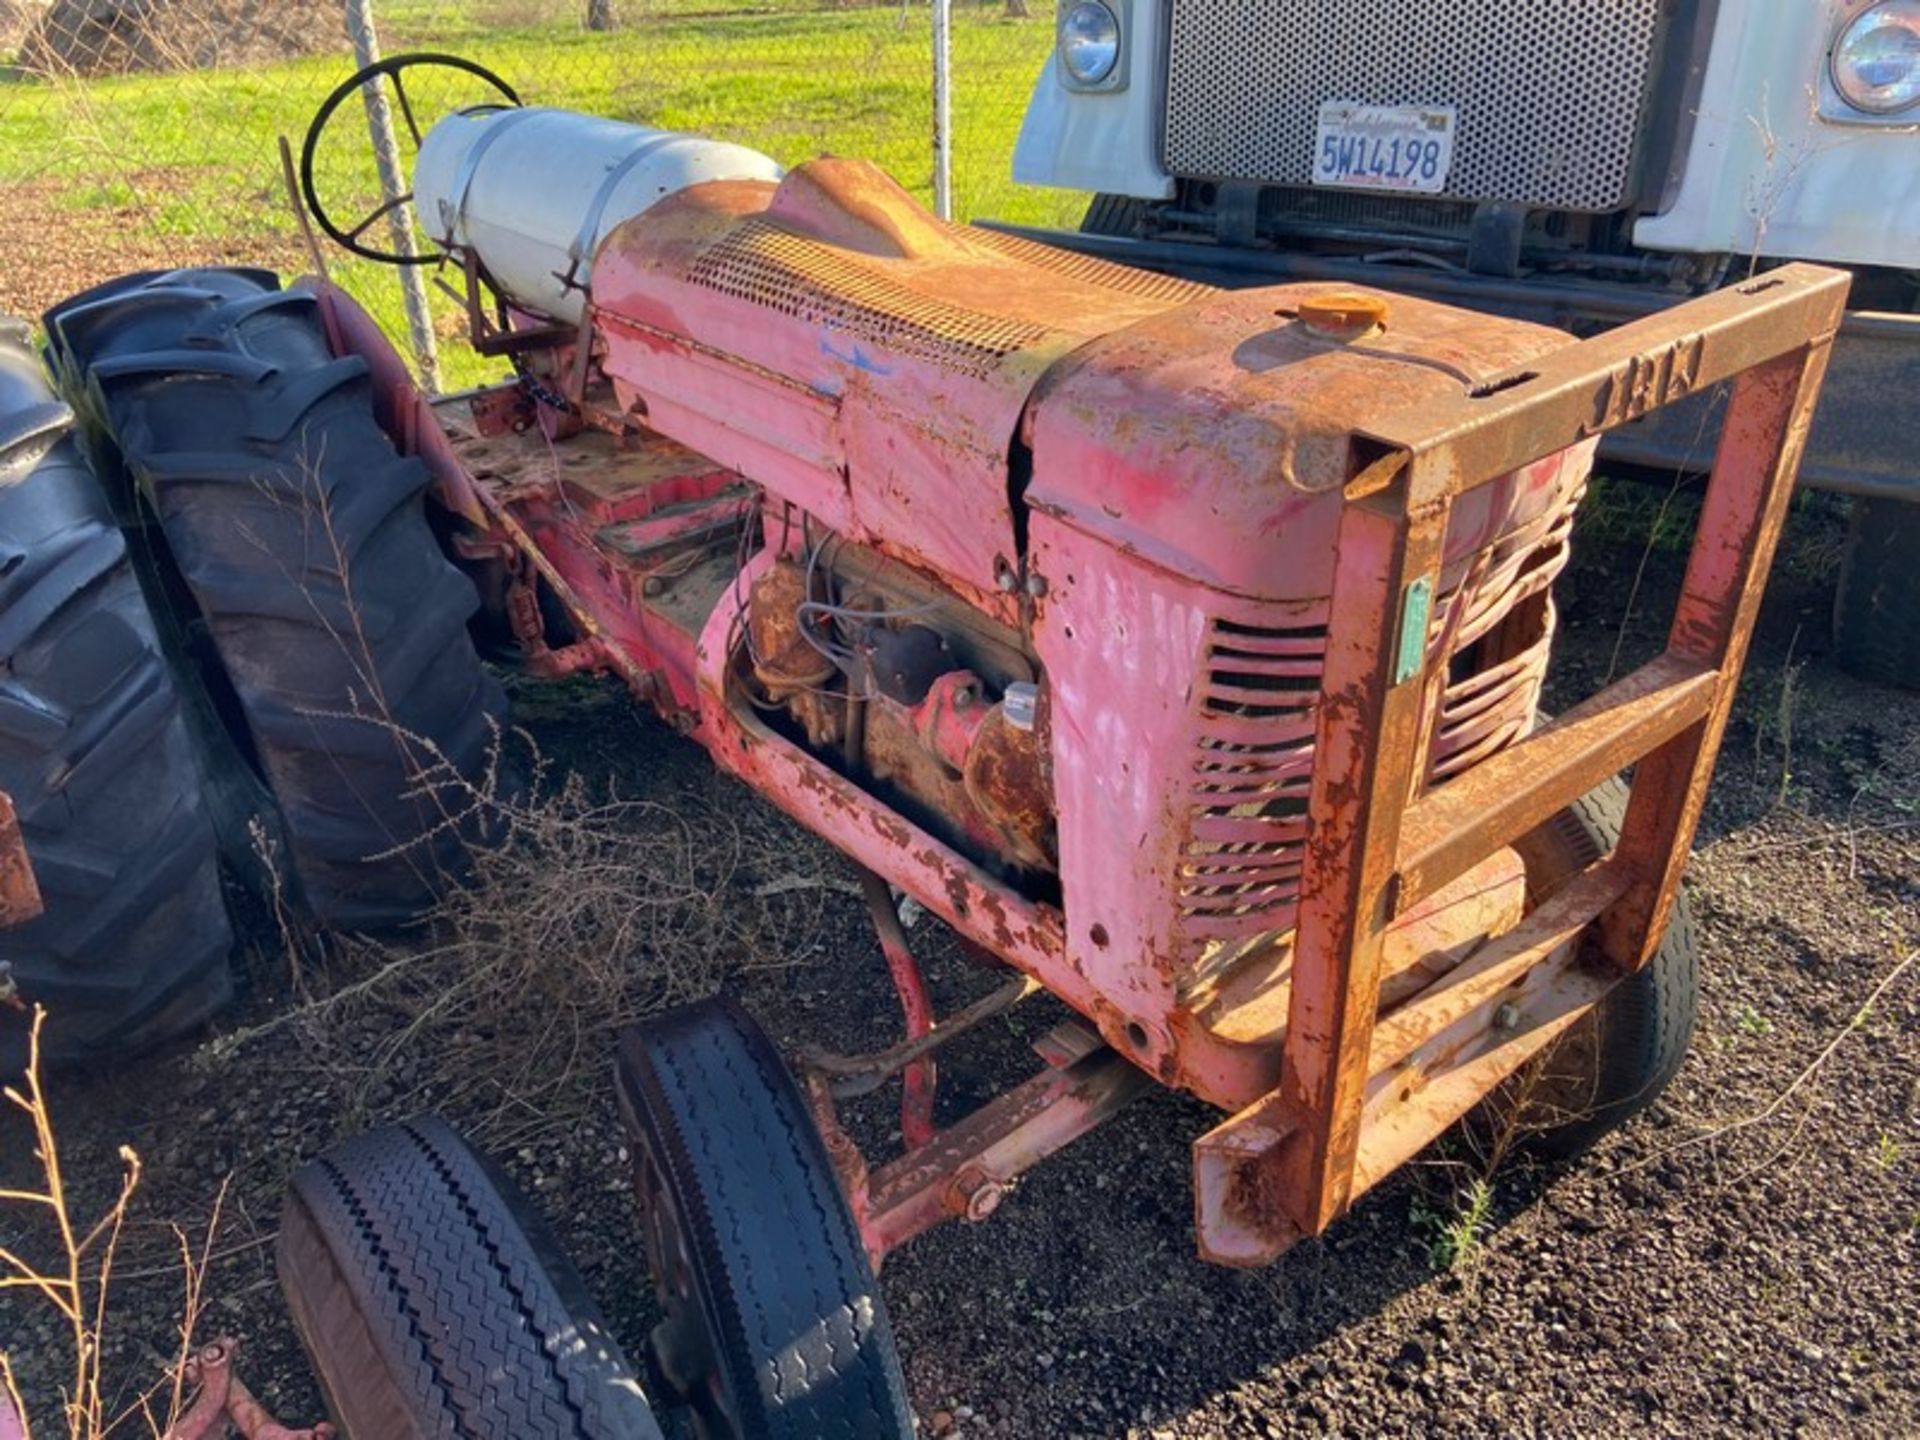 JRW Tractor (Unit 581) (LOCATED IN ATWATER, CA) - Bild 2 aus 3